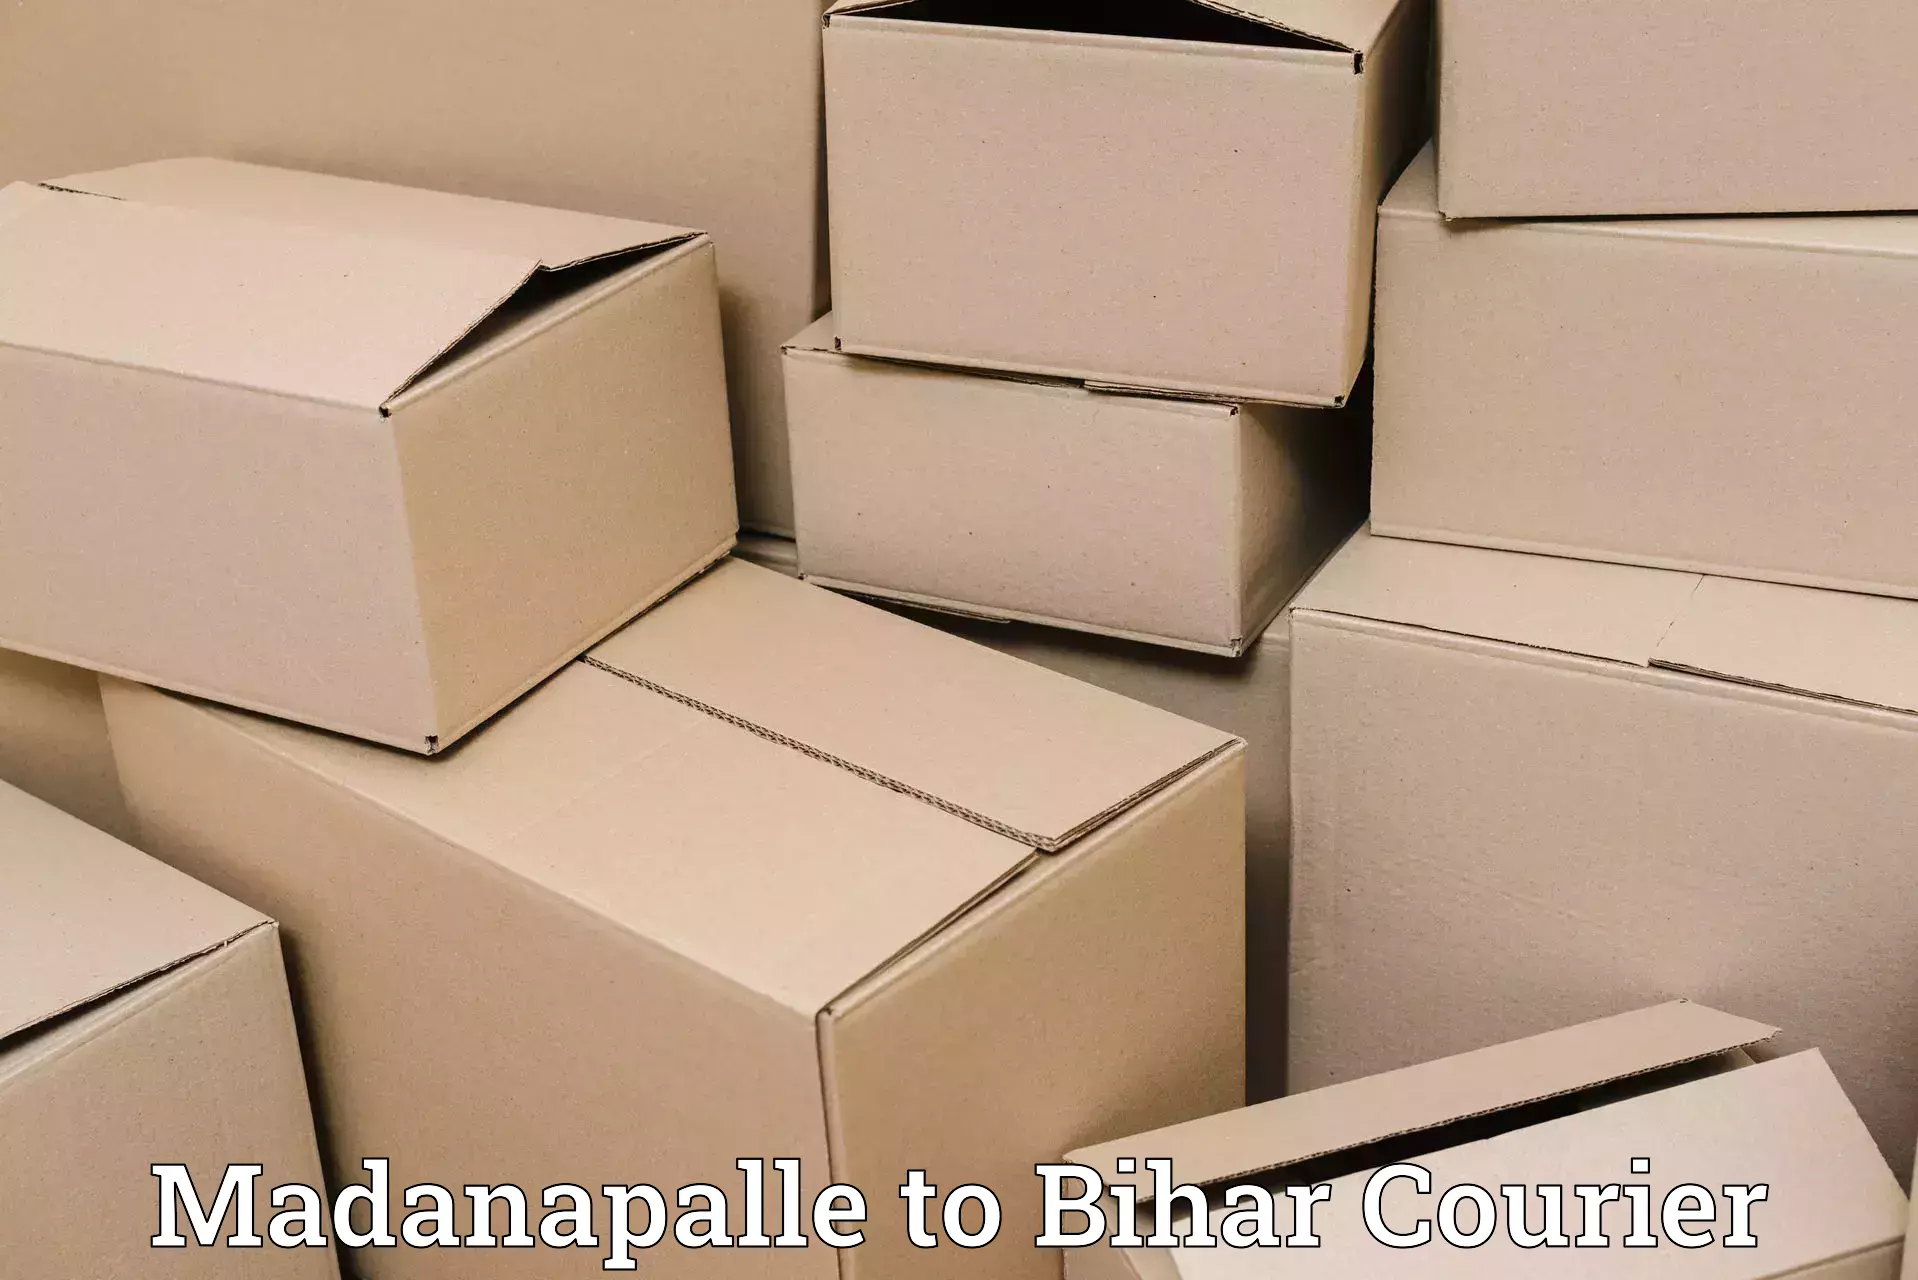 Digital courier platforms Madanapalle to Bihar